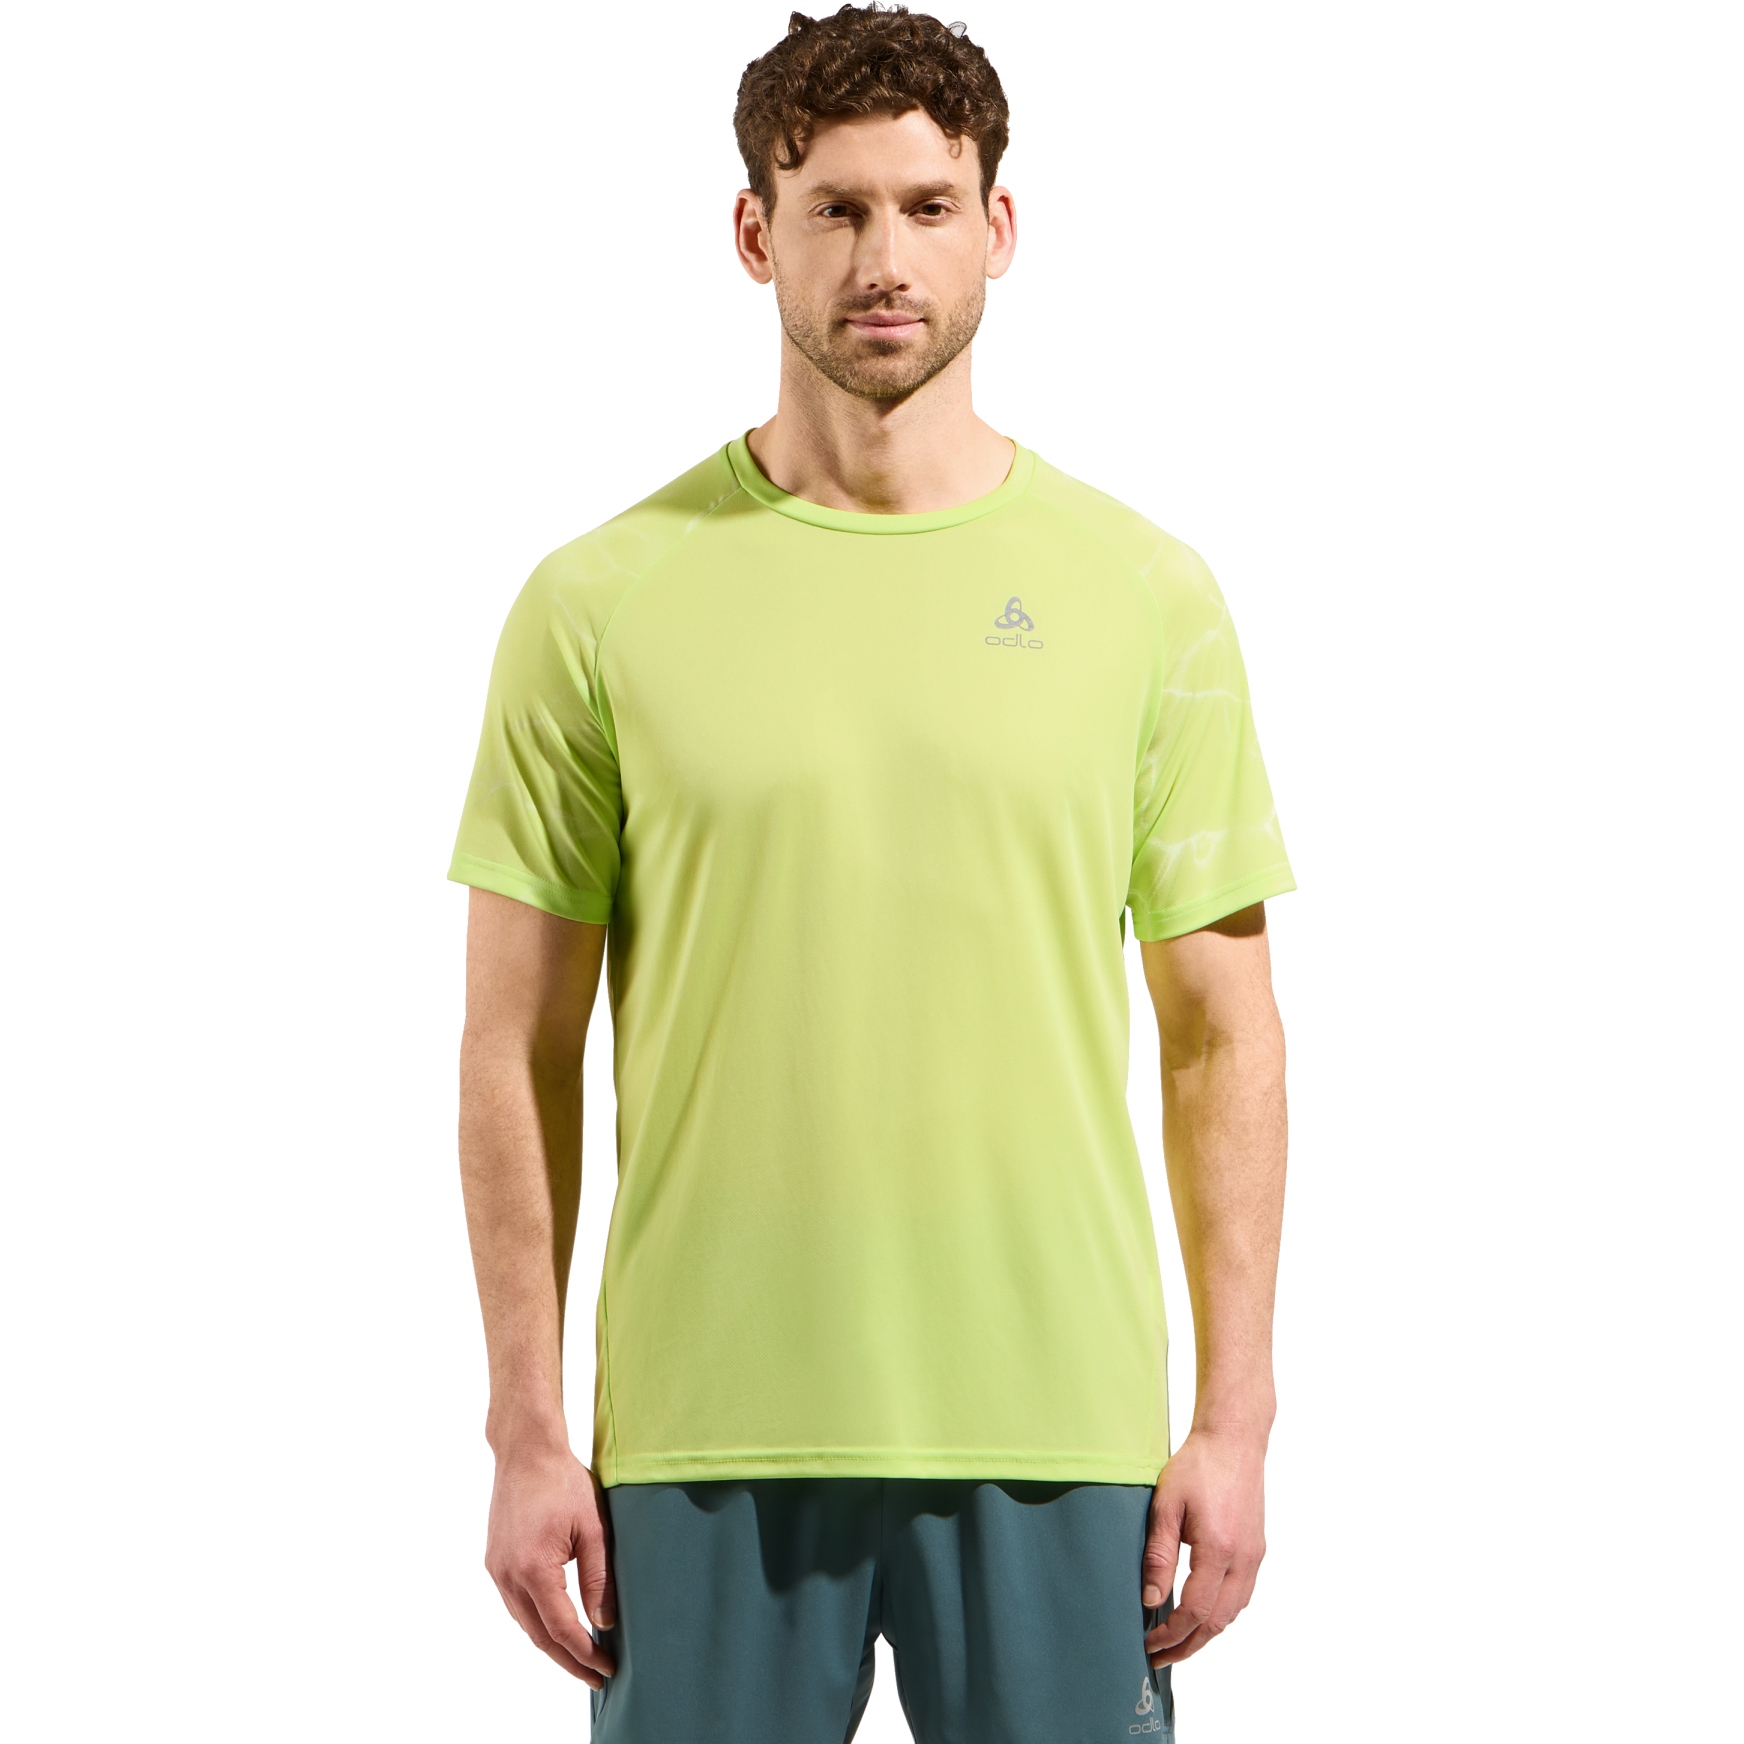 Produktbild von Odlo Essentials Laufshirt mit Print Herren - sharp green